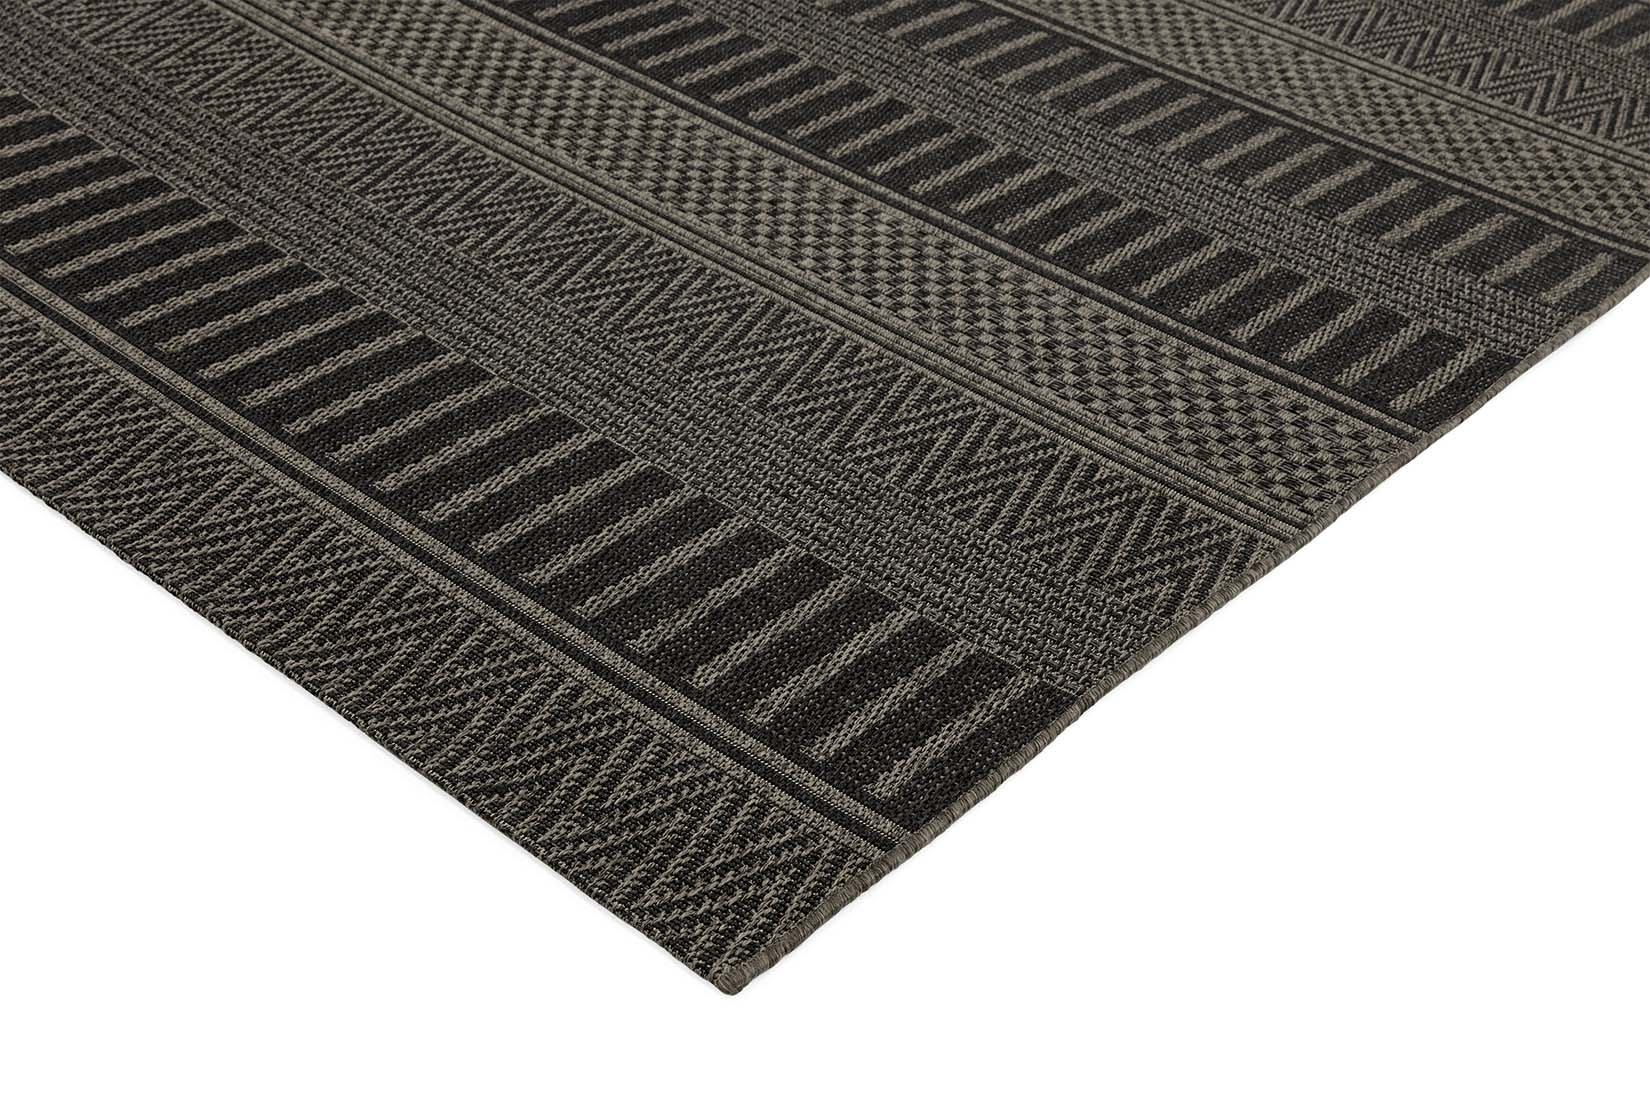 moroccan style indoor/outdoor rug in black
